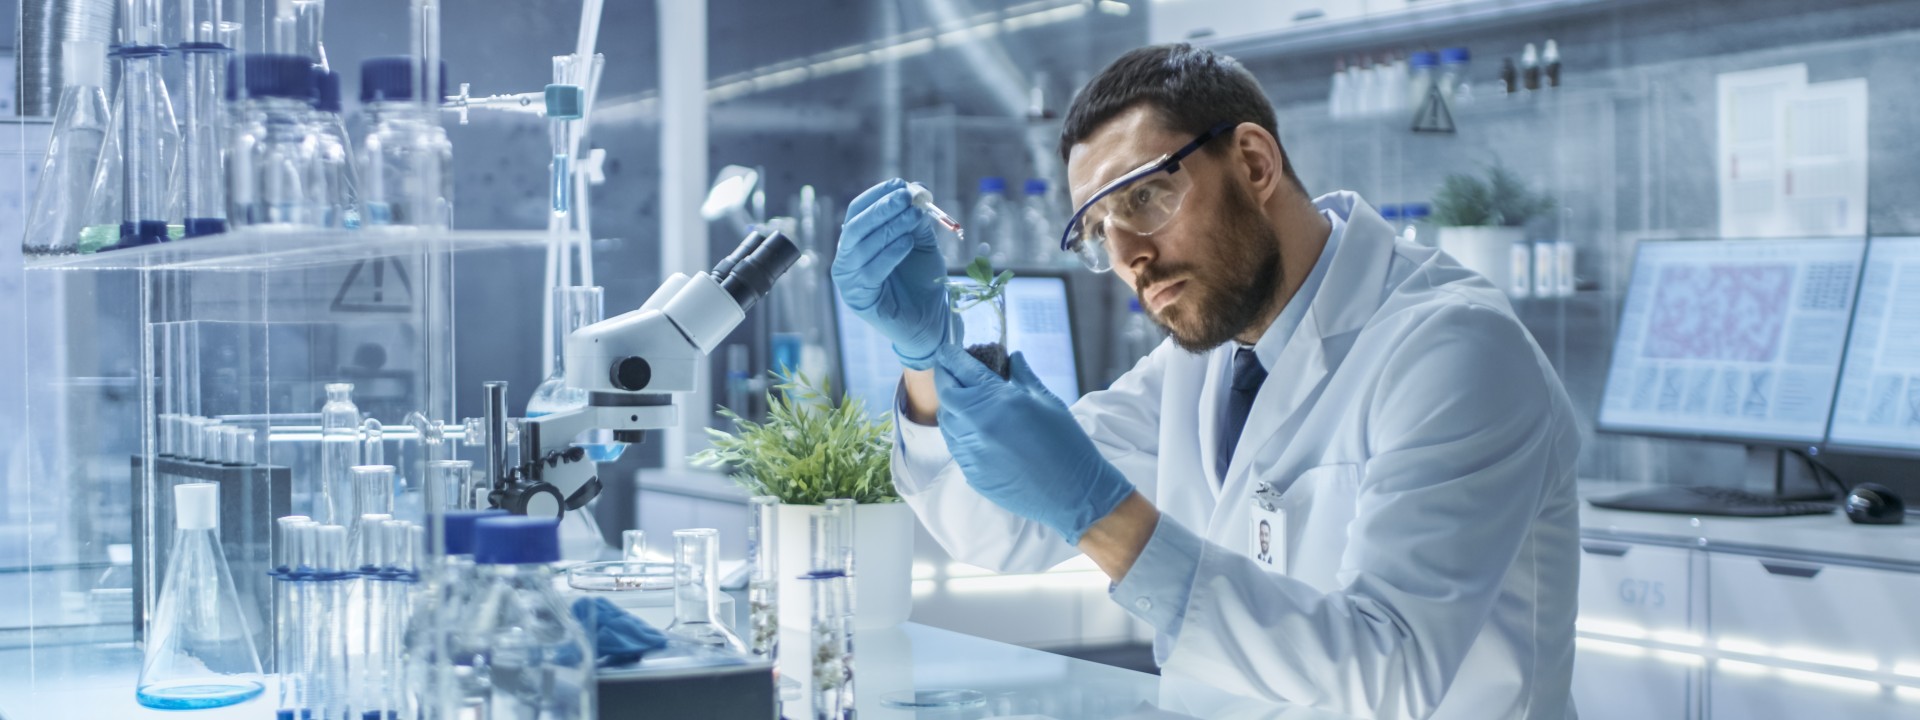 Biotechnologie - Mann im Biolabor mit Reagenzglas